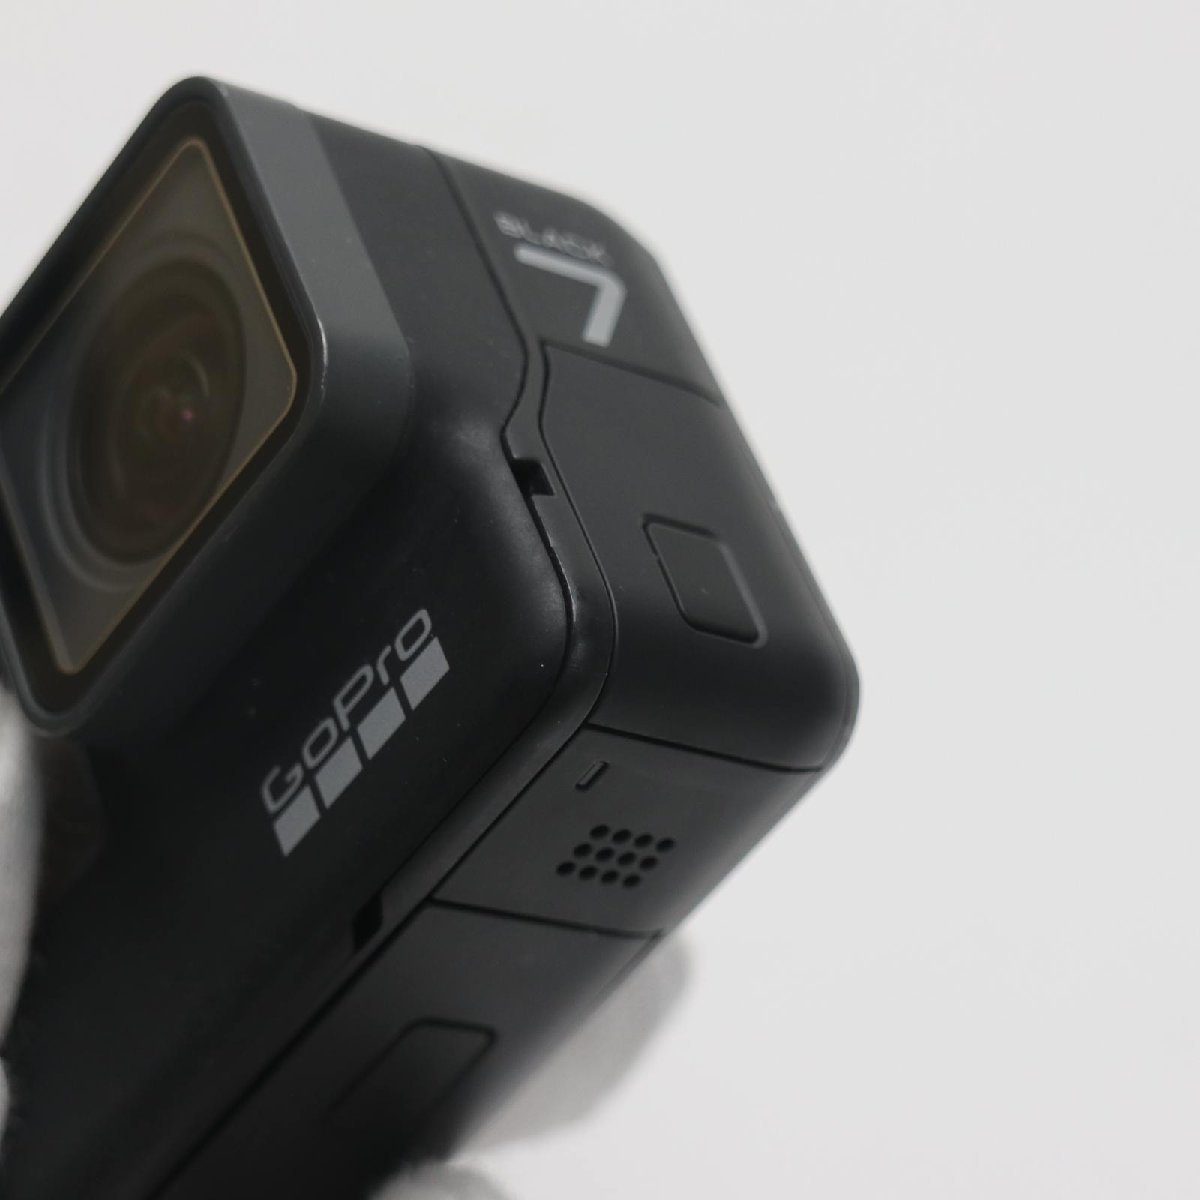 超 GoPro HERO7 Black 即日発送 Woodman Labs デジタルビデオカメラ